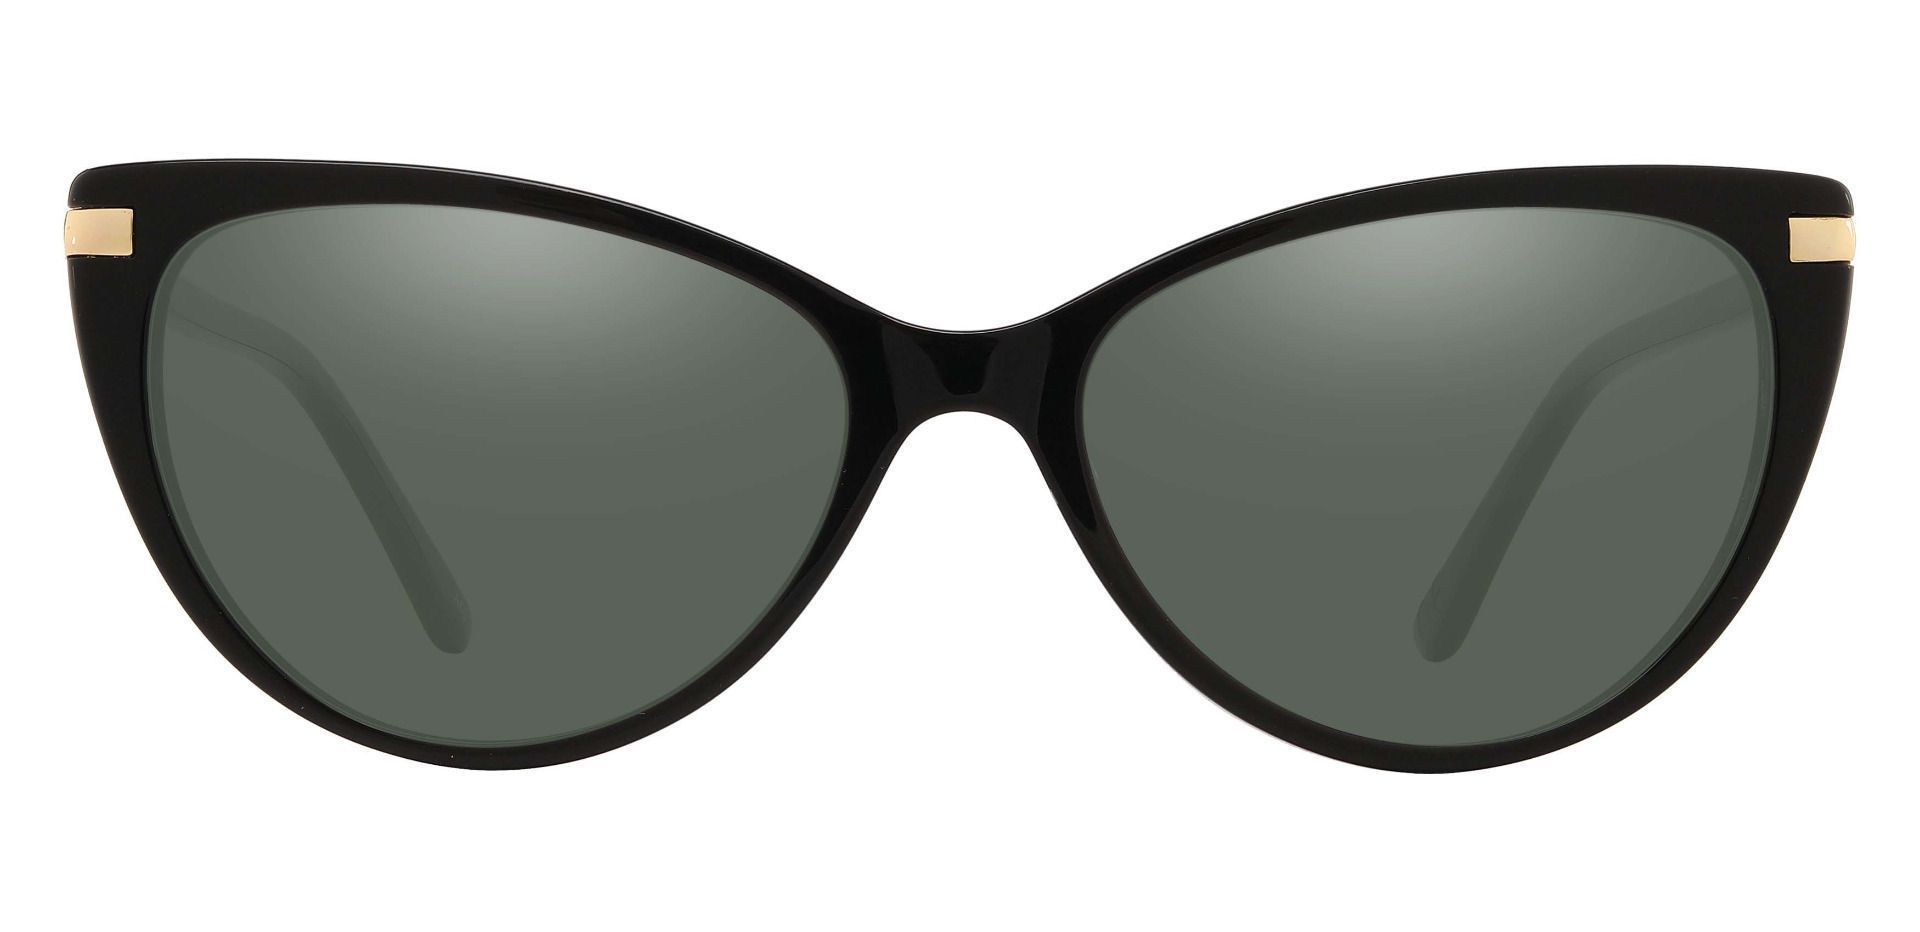 Starla Cat Eye Progressive Sunglasses - Black Frame With Green Lenses